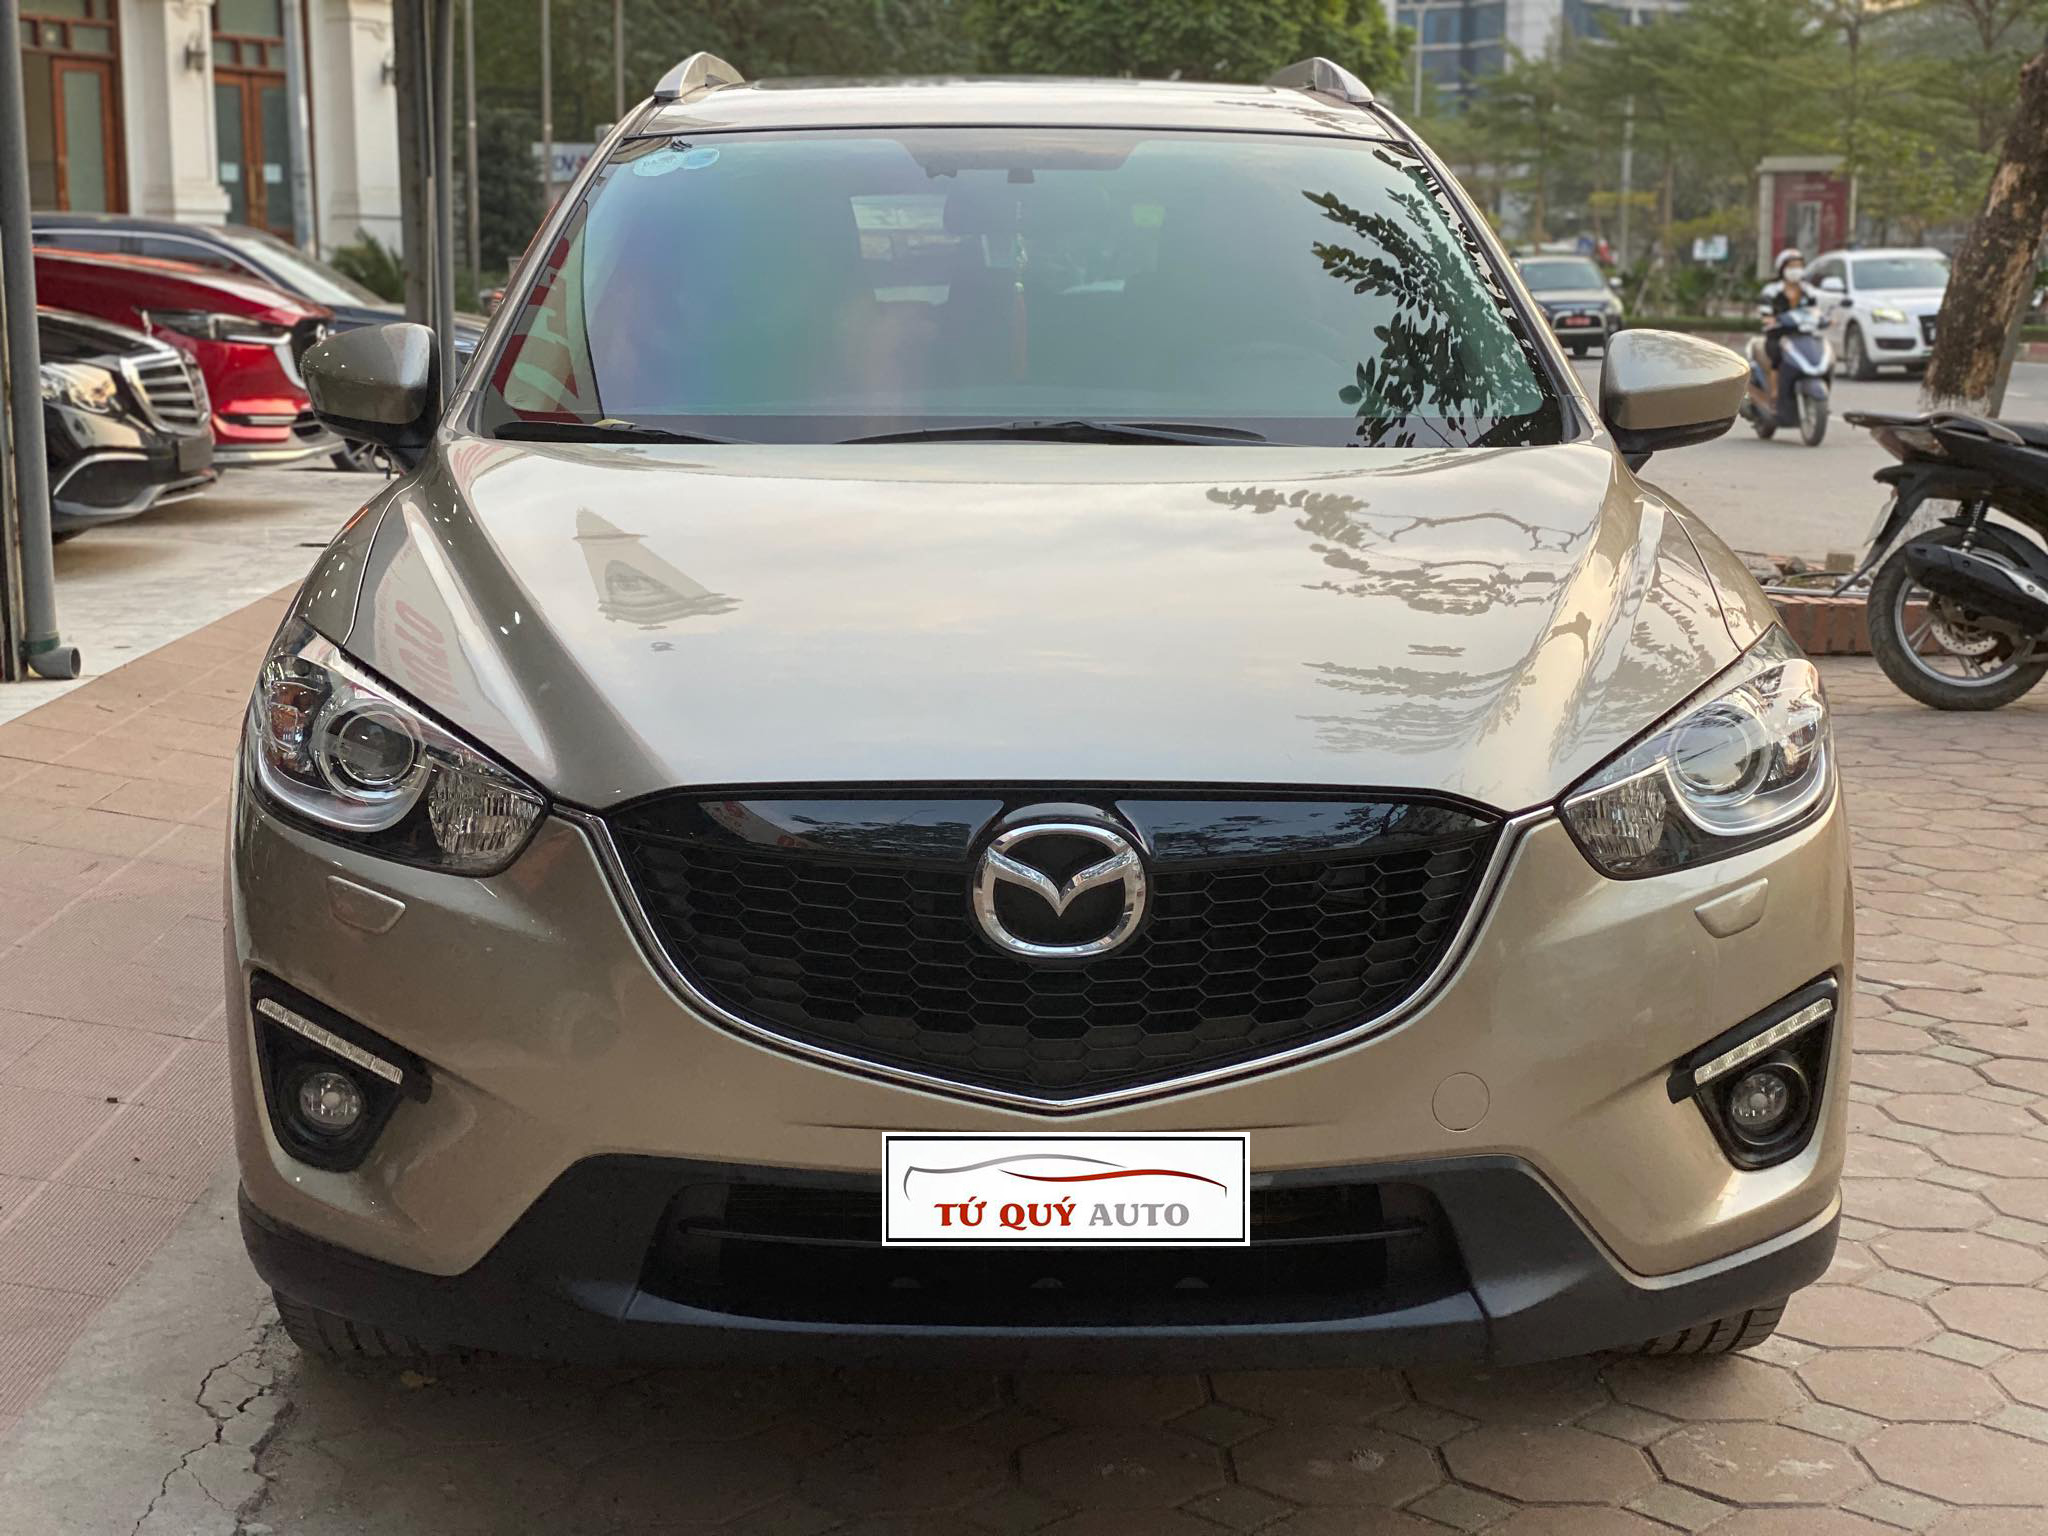 Đánh Giá Xe Cũ Mazda CX5 20  2015 Giá Hơn 500 Triệu Biển Hà Nội  VG Auto   YouTube